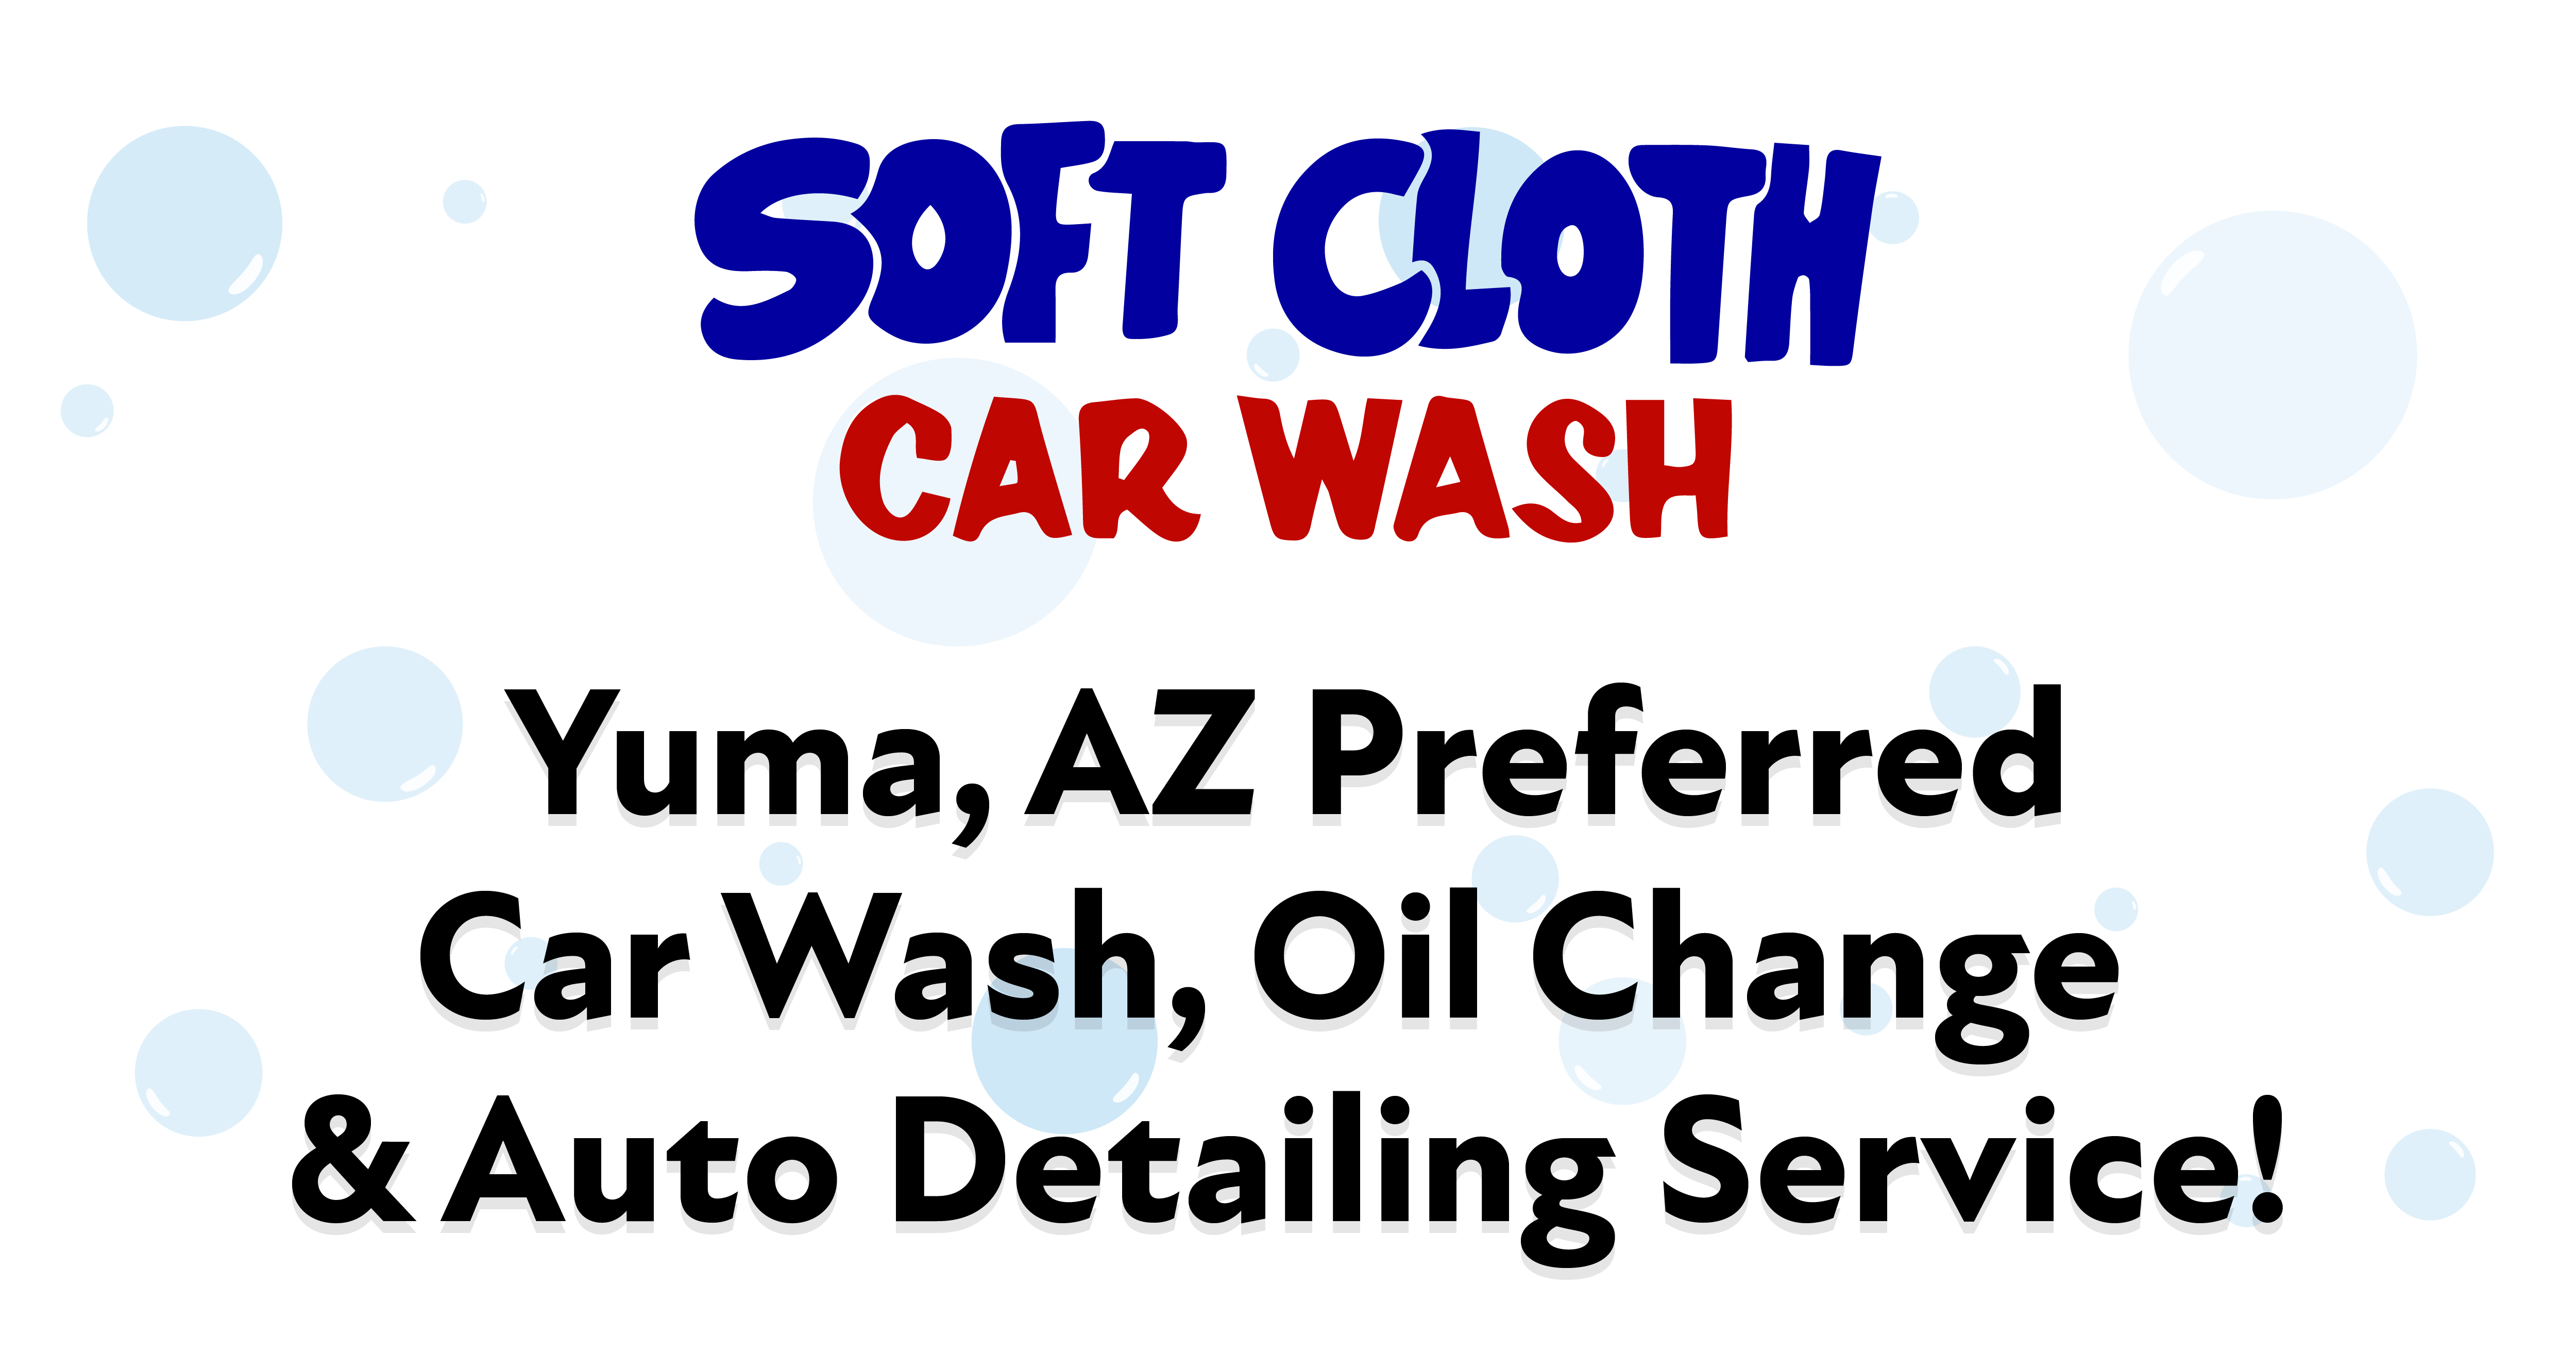 Car Wash - Soft Cloth Car Wash in Yuma and Jiffy Lube Yuma Oil Change